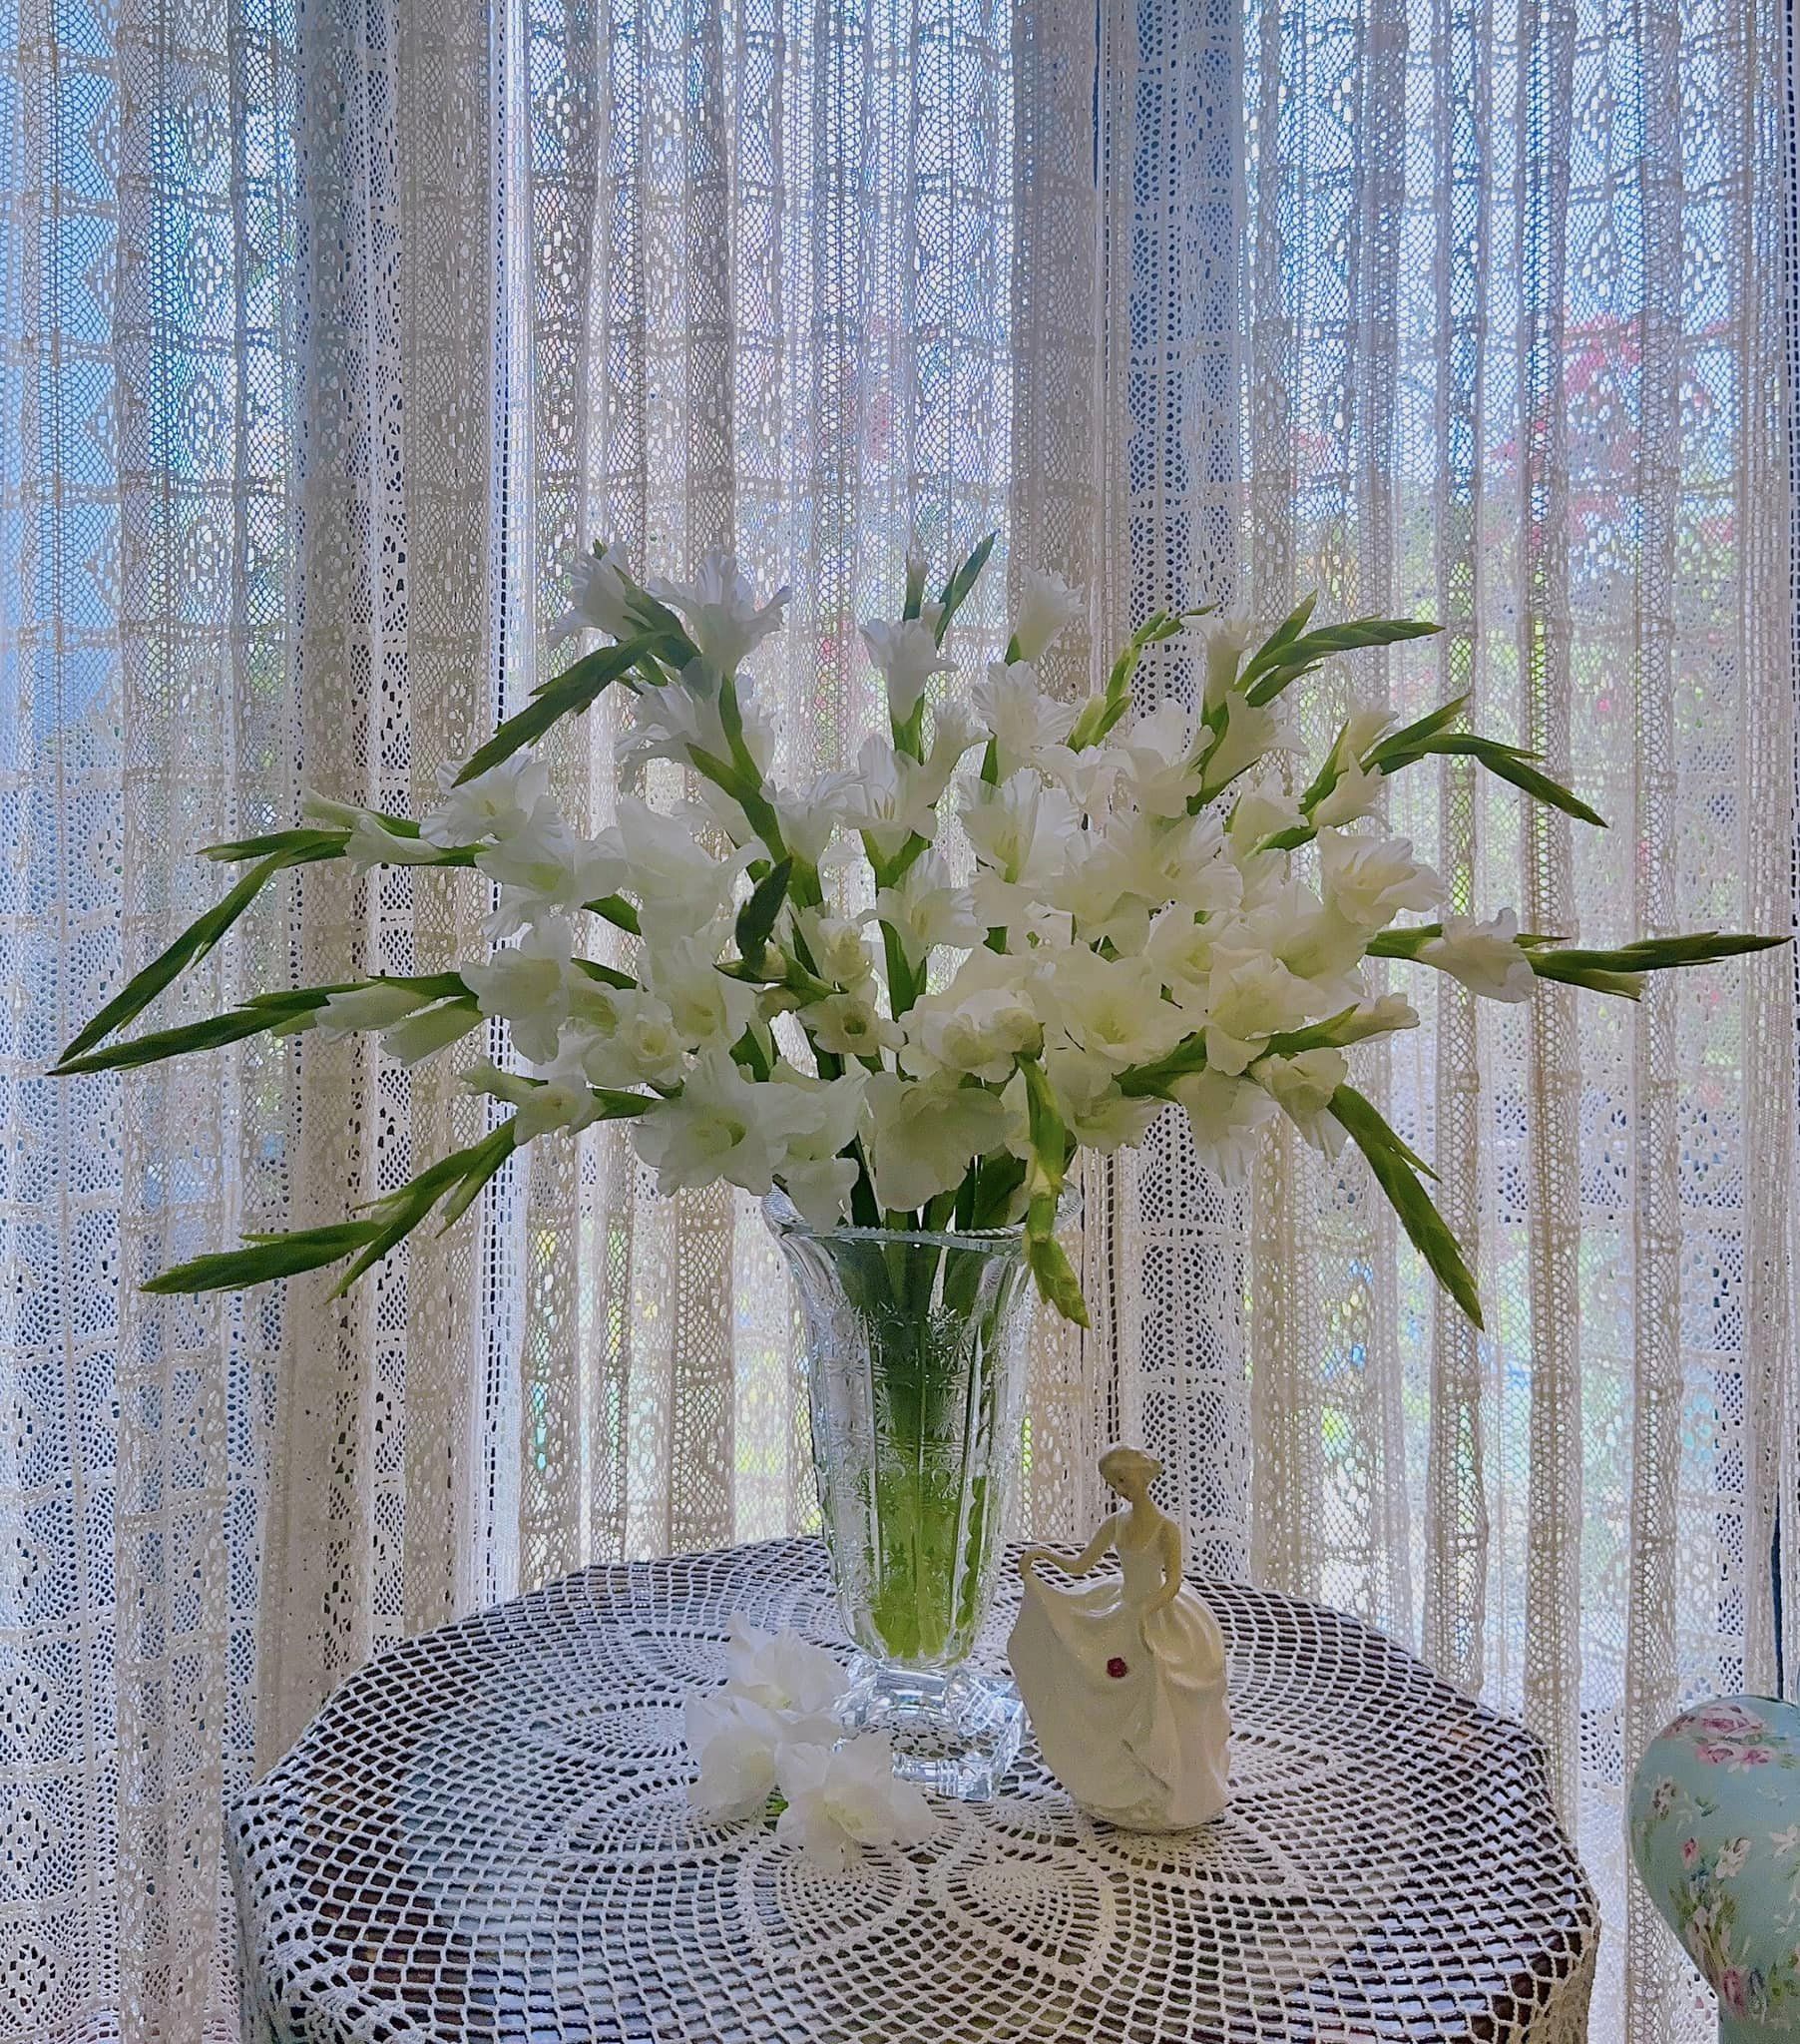 Loài hoa tượng trưng cho may mắn, Tết này cắm một bình trong nhà, đảm bảo cả năm vượng tài, vui vẻ, giá lại rẻ - Ảnh 13.